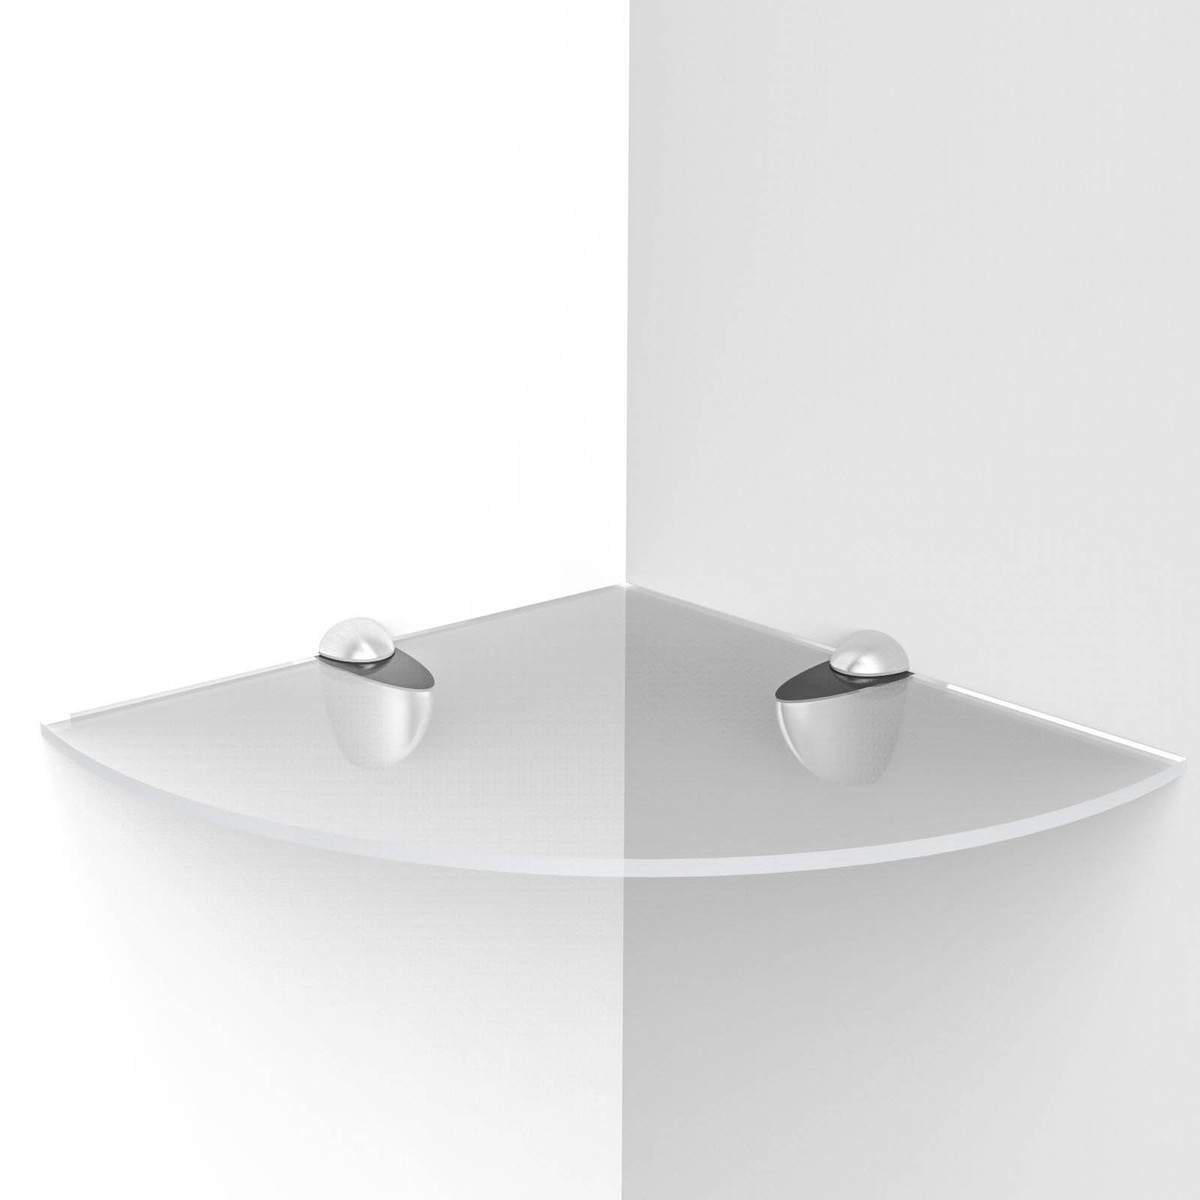 高档亚克力透明扇形置物架三角 搁板 层板厨房卫生间收纳可定制